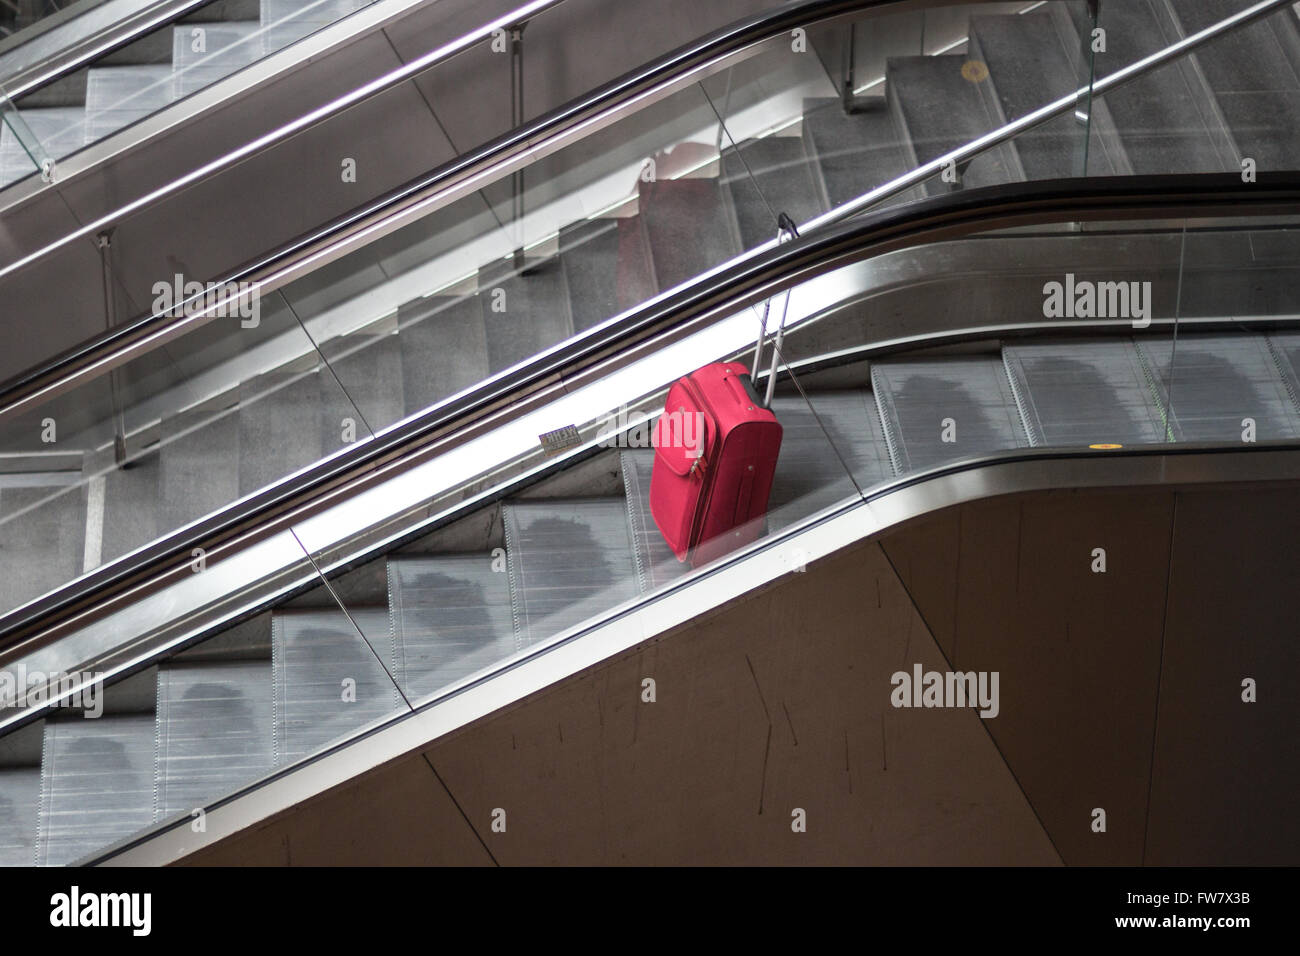 Valise roulant rouge sur l'escalator qui voyage seul Banque D'Images